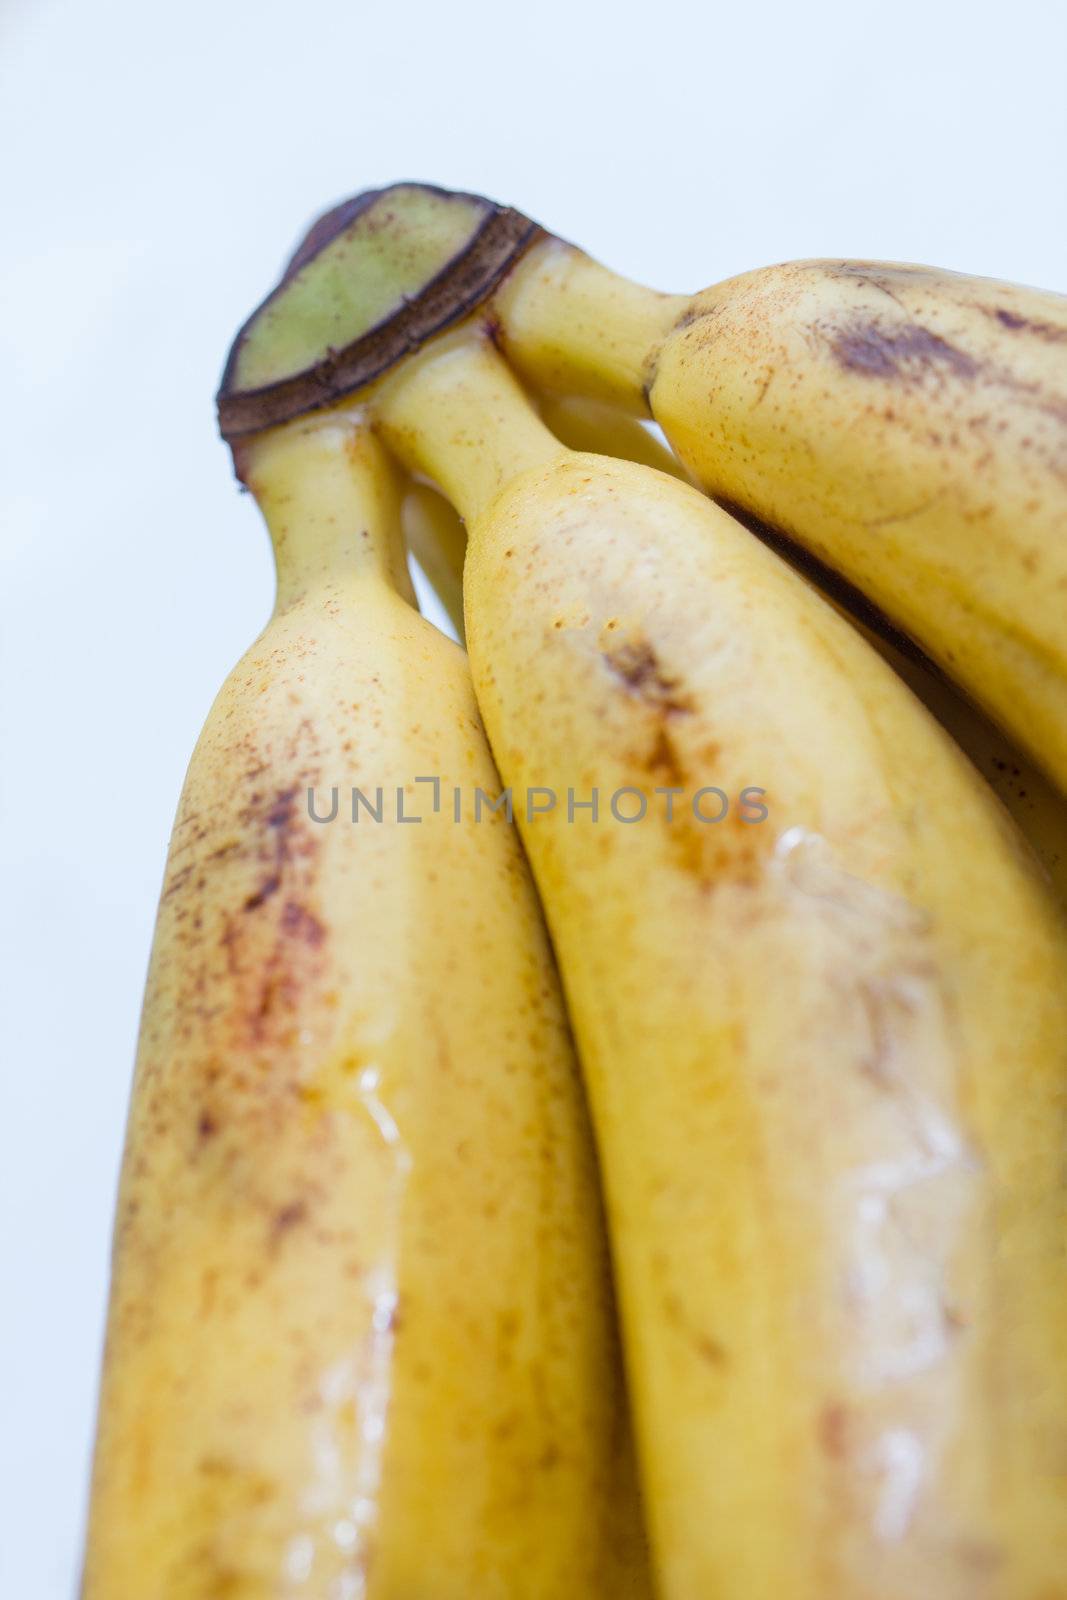 small bananas by Teka77